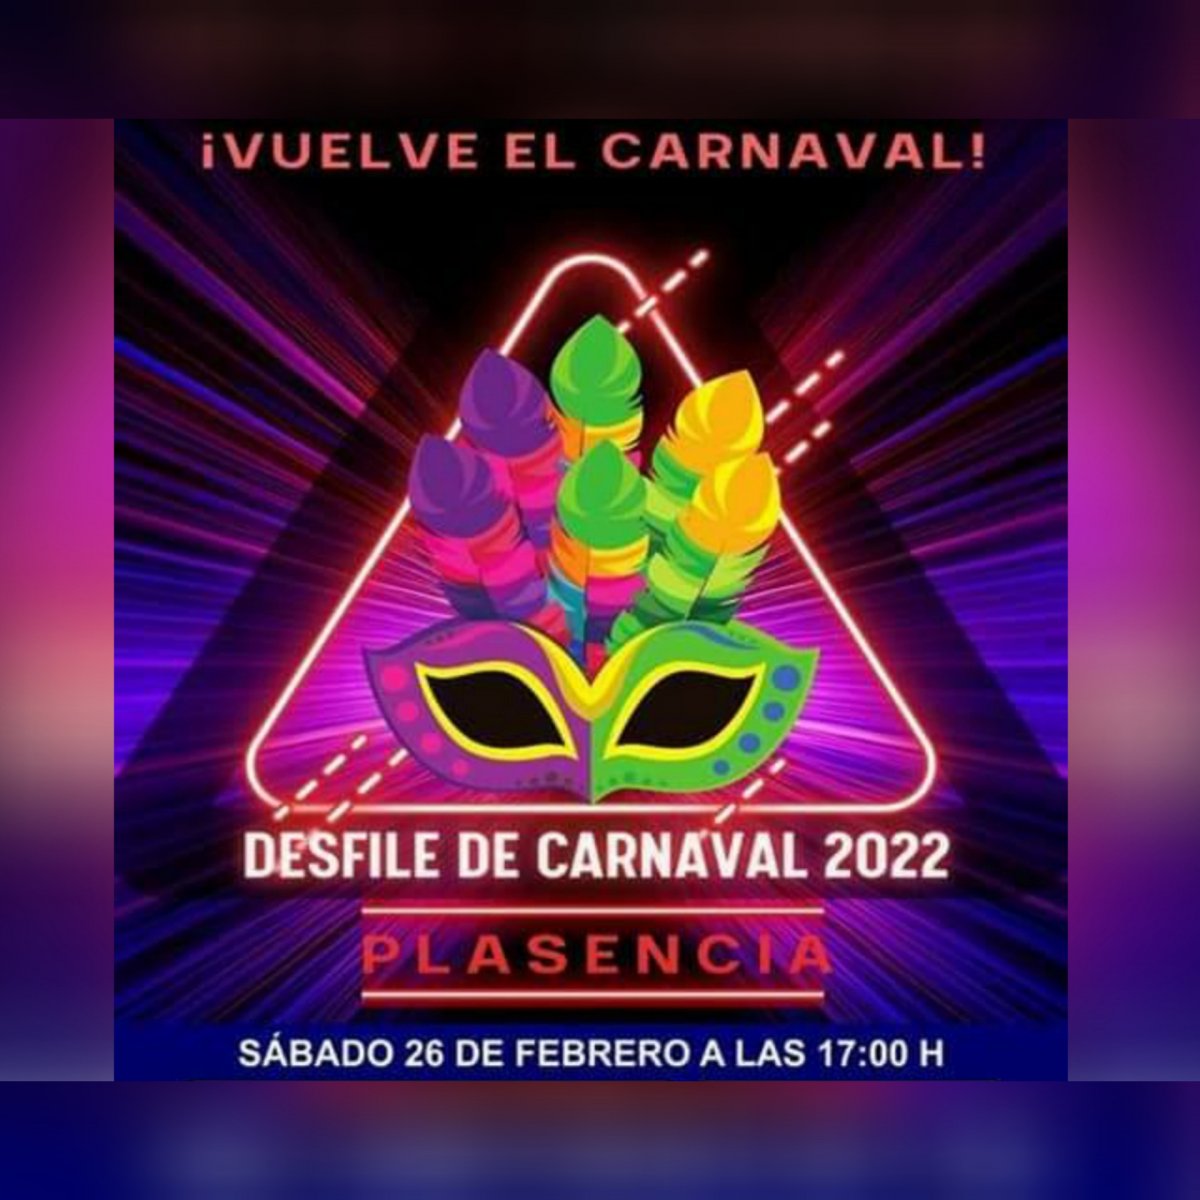 Plasencia recupera las actividades de carnaval con un desfile de comparsas